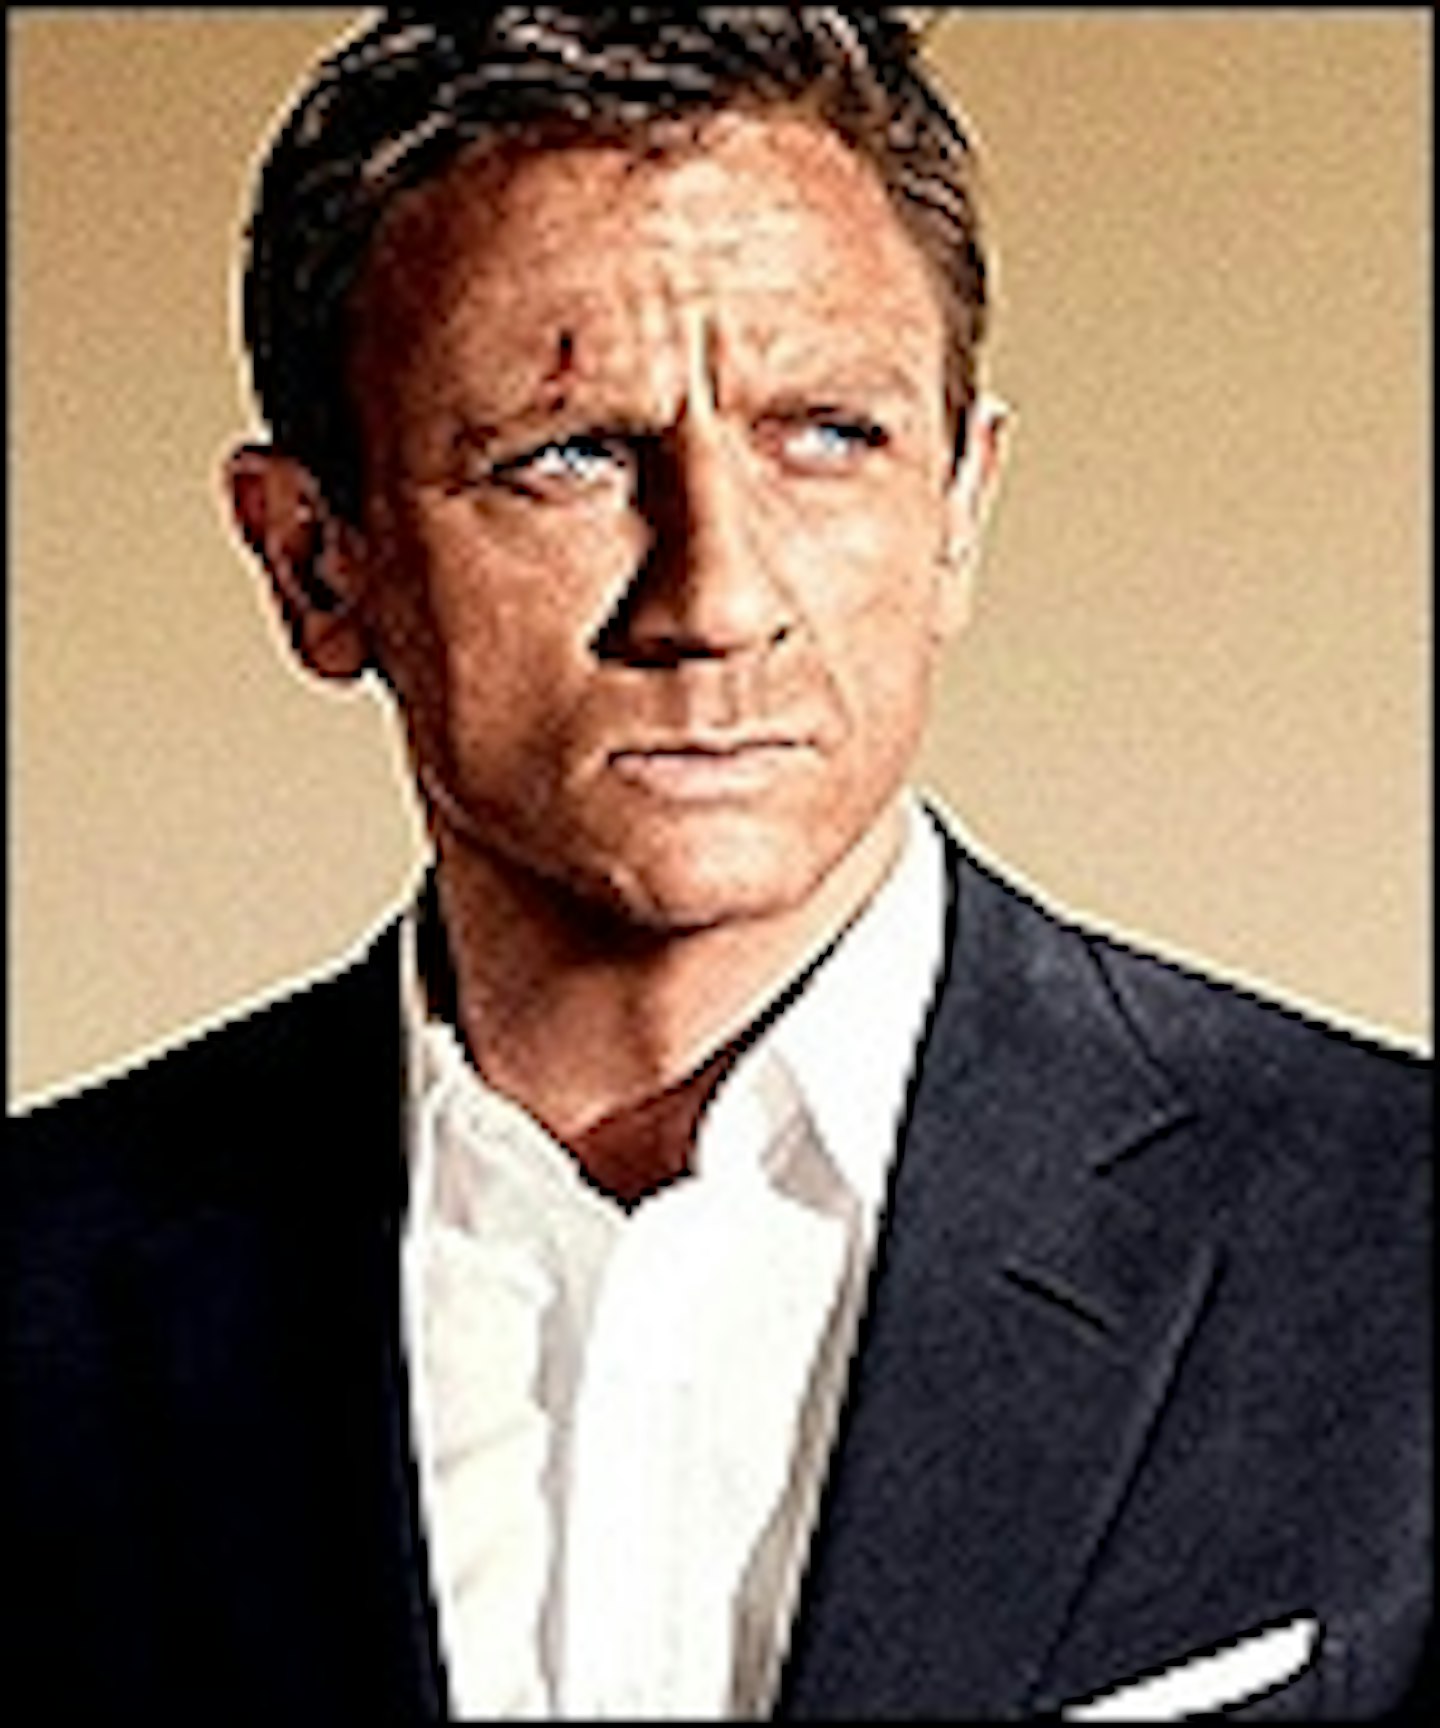 Daniel Craig For Five More Bonds?